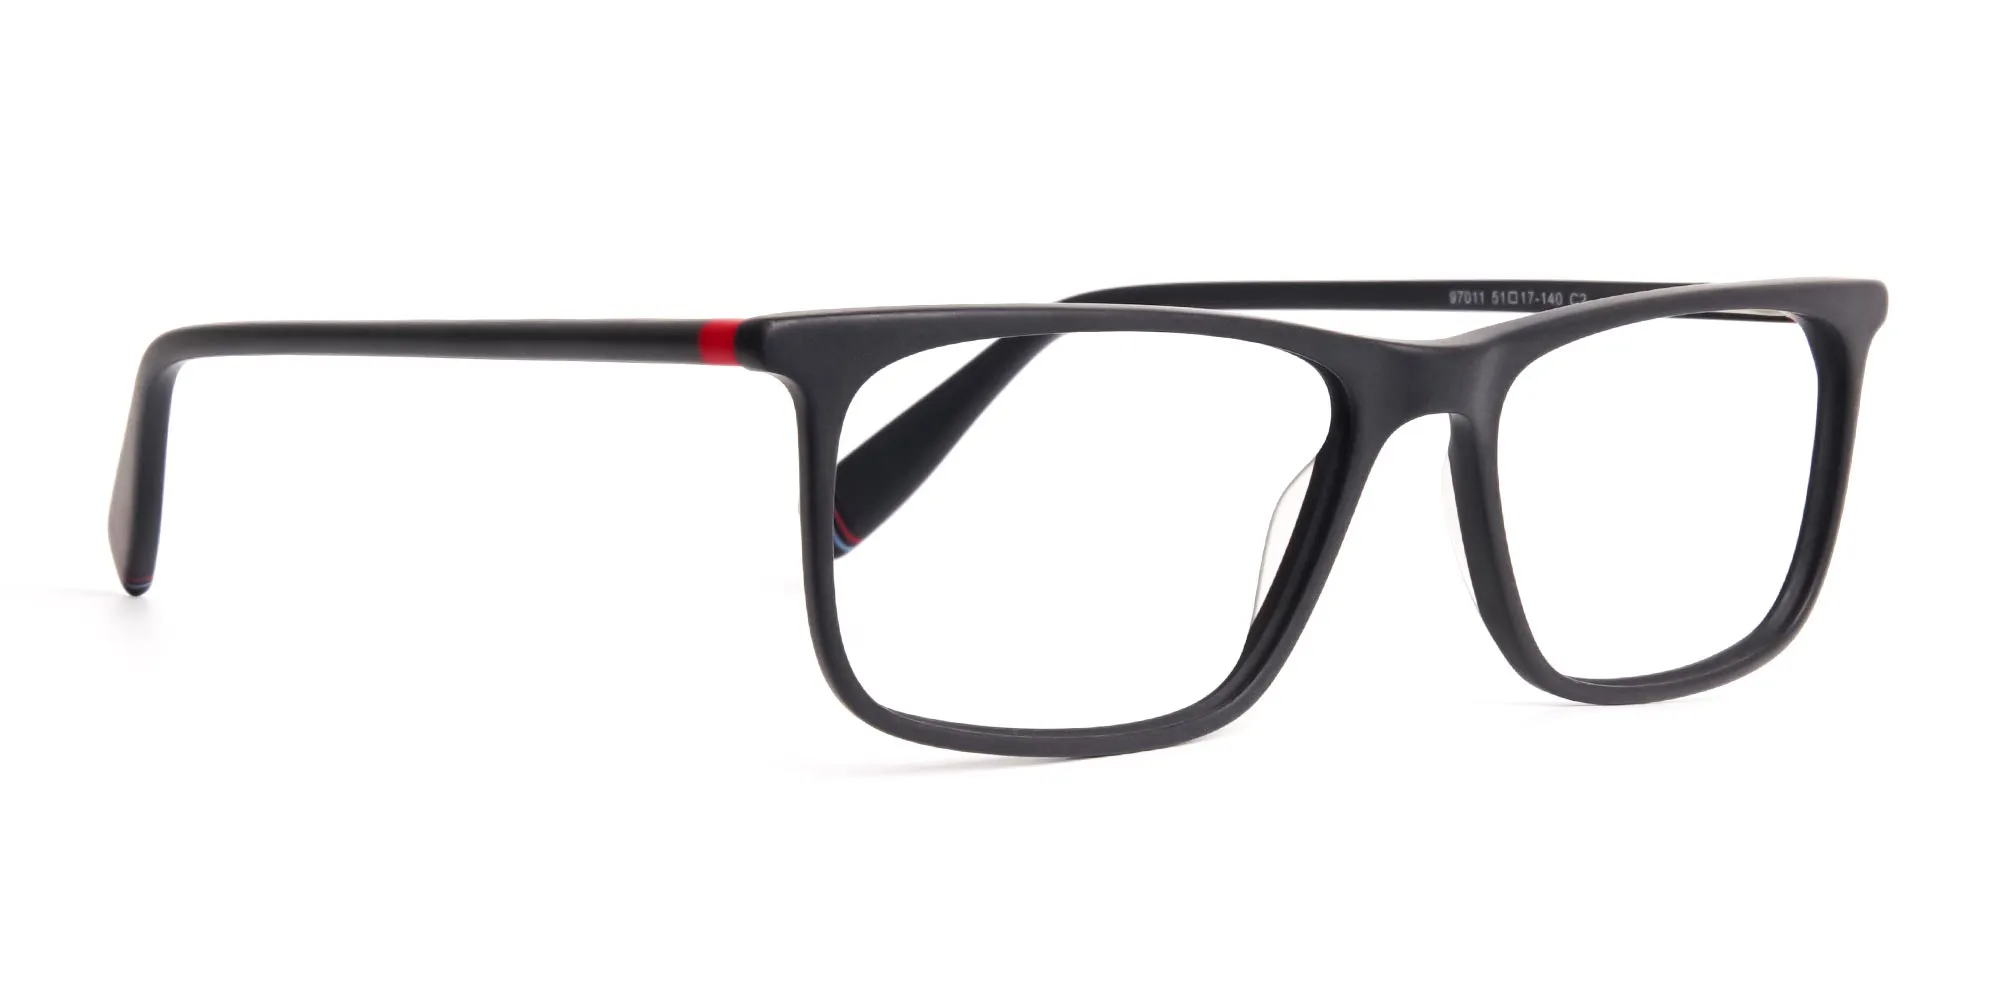 matte-black-glasses-rectangular-shape-frames-2